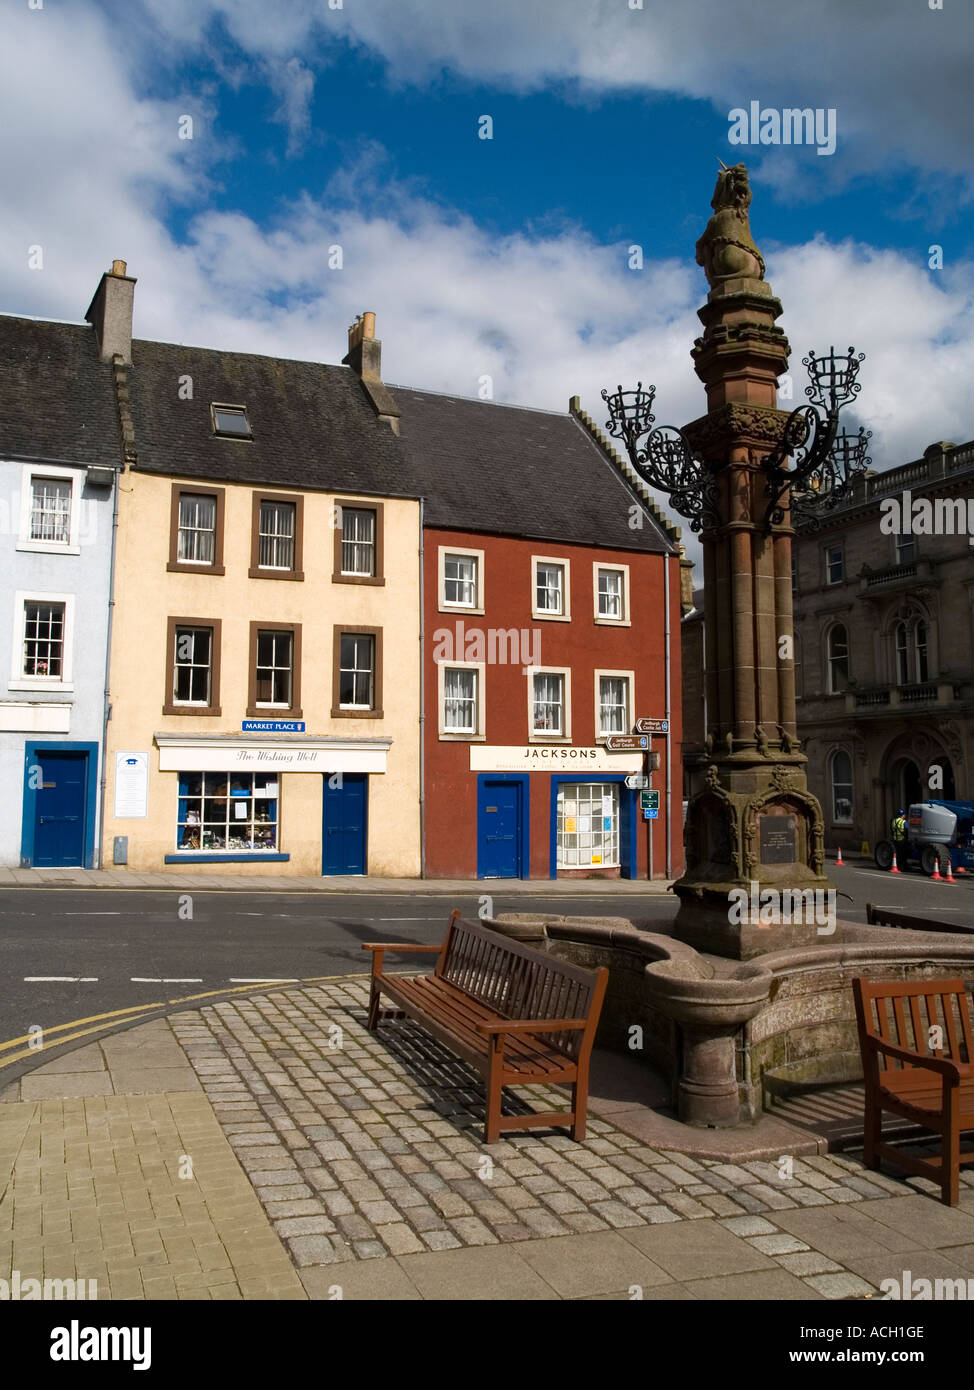 Gedenk-Brunnen für Königin Victorias goldenes Jubiläum und bunte Häuser im Marktplatz Jedburgh, Schottland Grenzen UK. Stockfoto